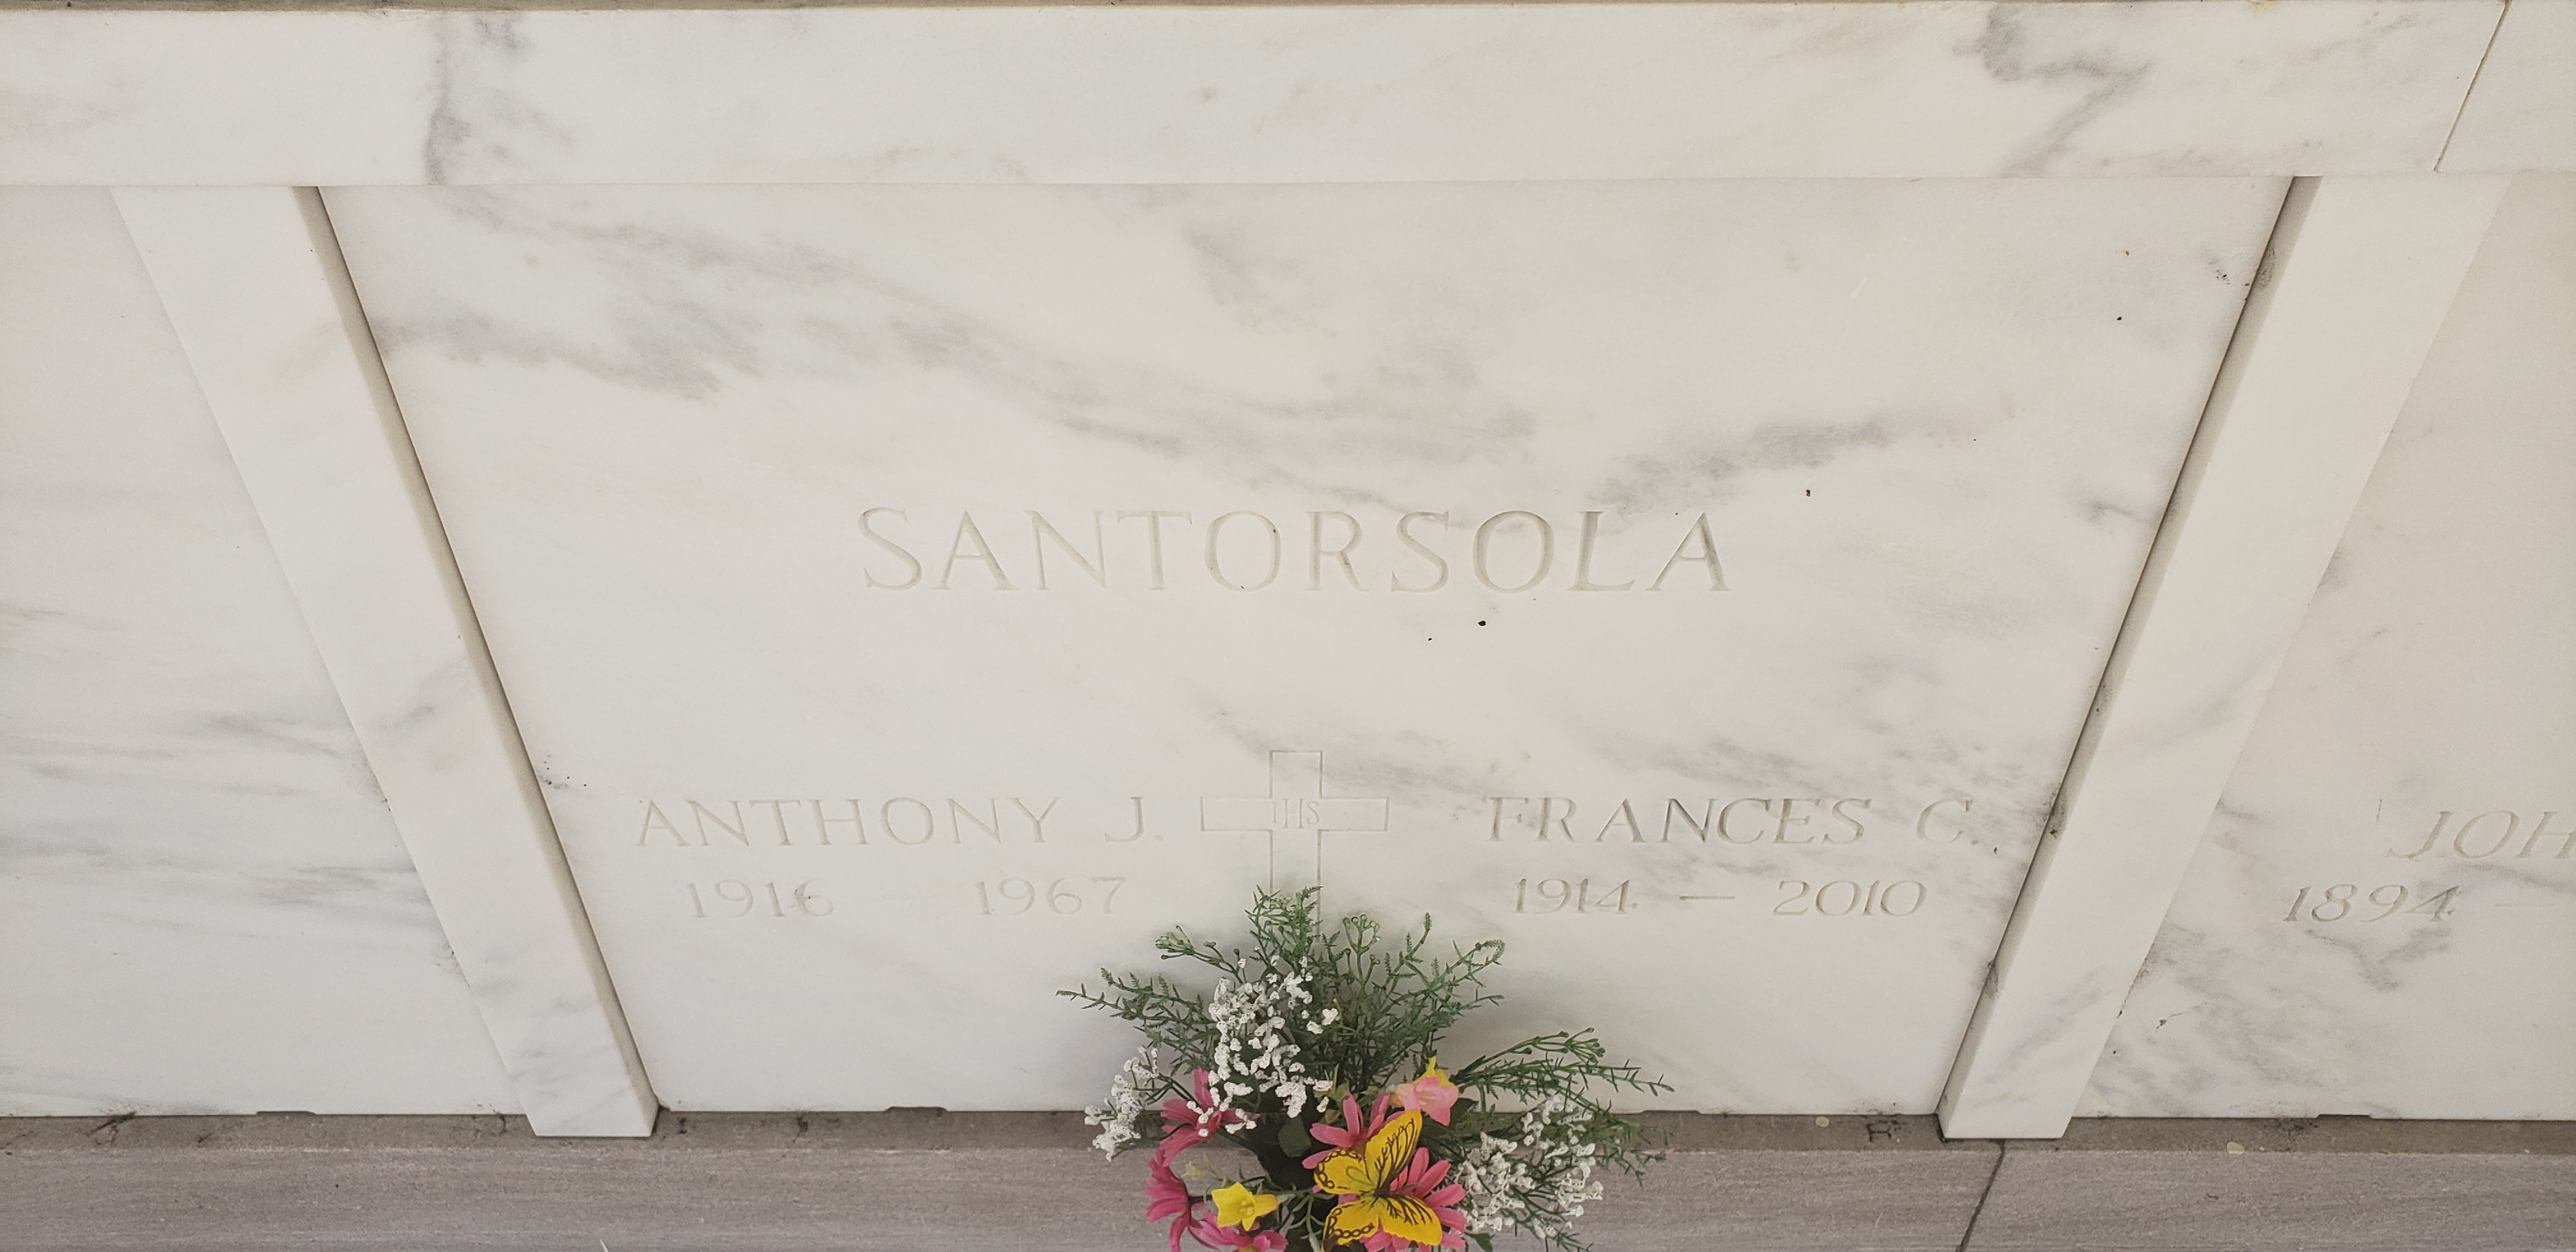 Frances C Santorsola